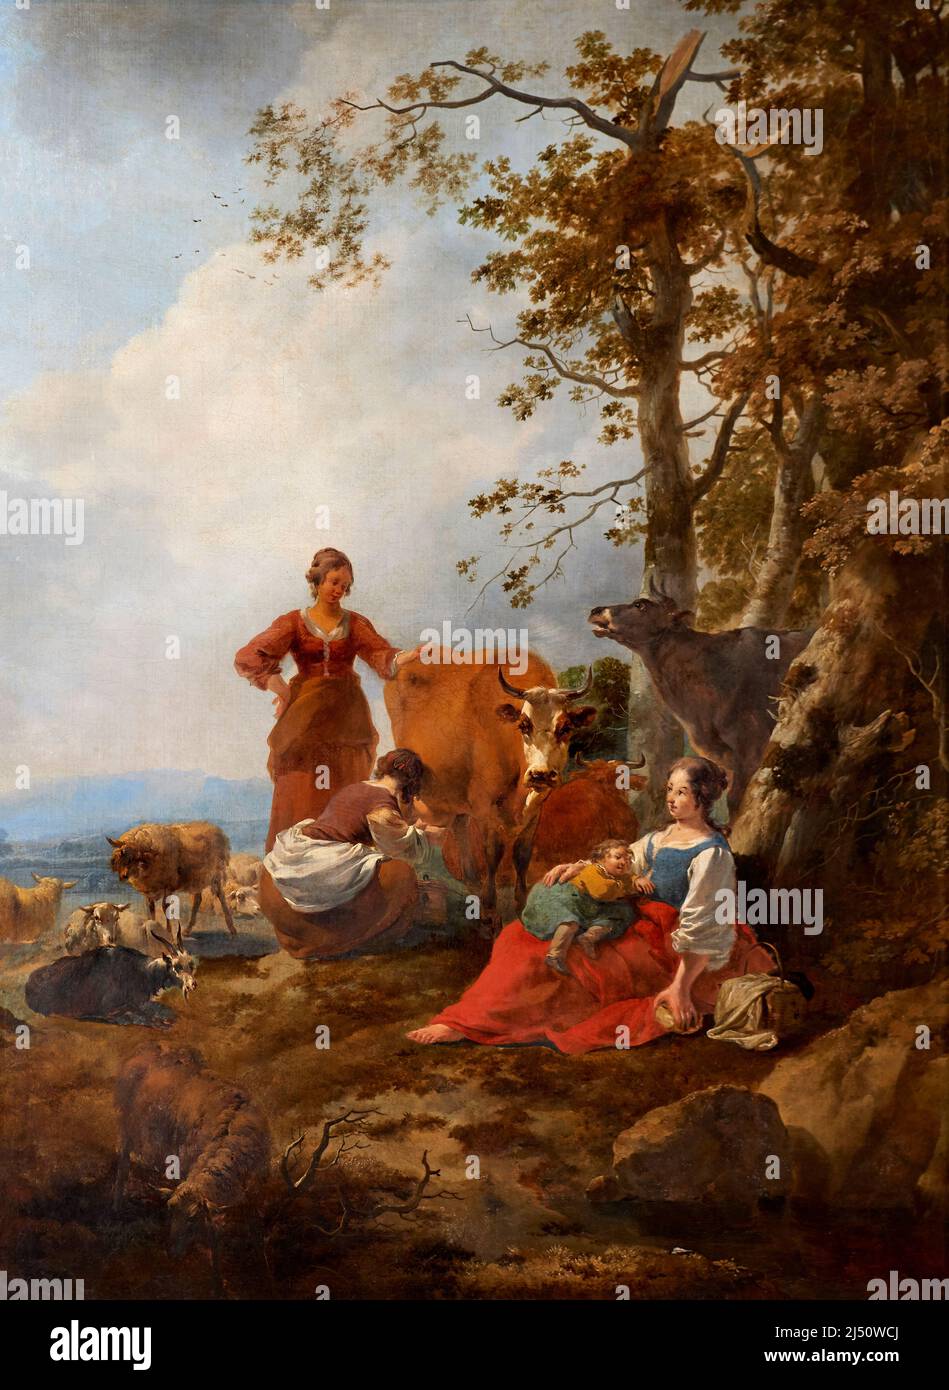 Paesaggio con contadine e armenti - olio su tela - Nicolaes Berchem - seconda metà del XVII secolo - Venezia, Gallerie dell' Accademia Banque D'Images